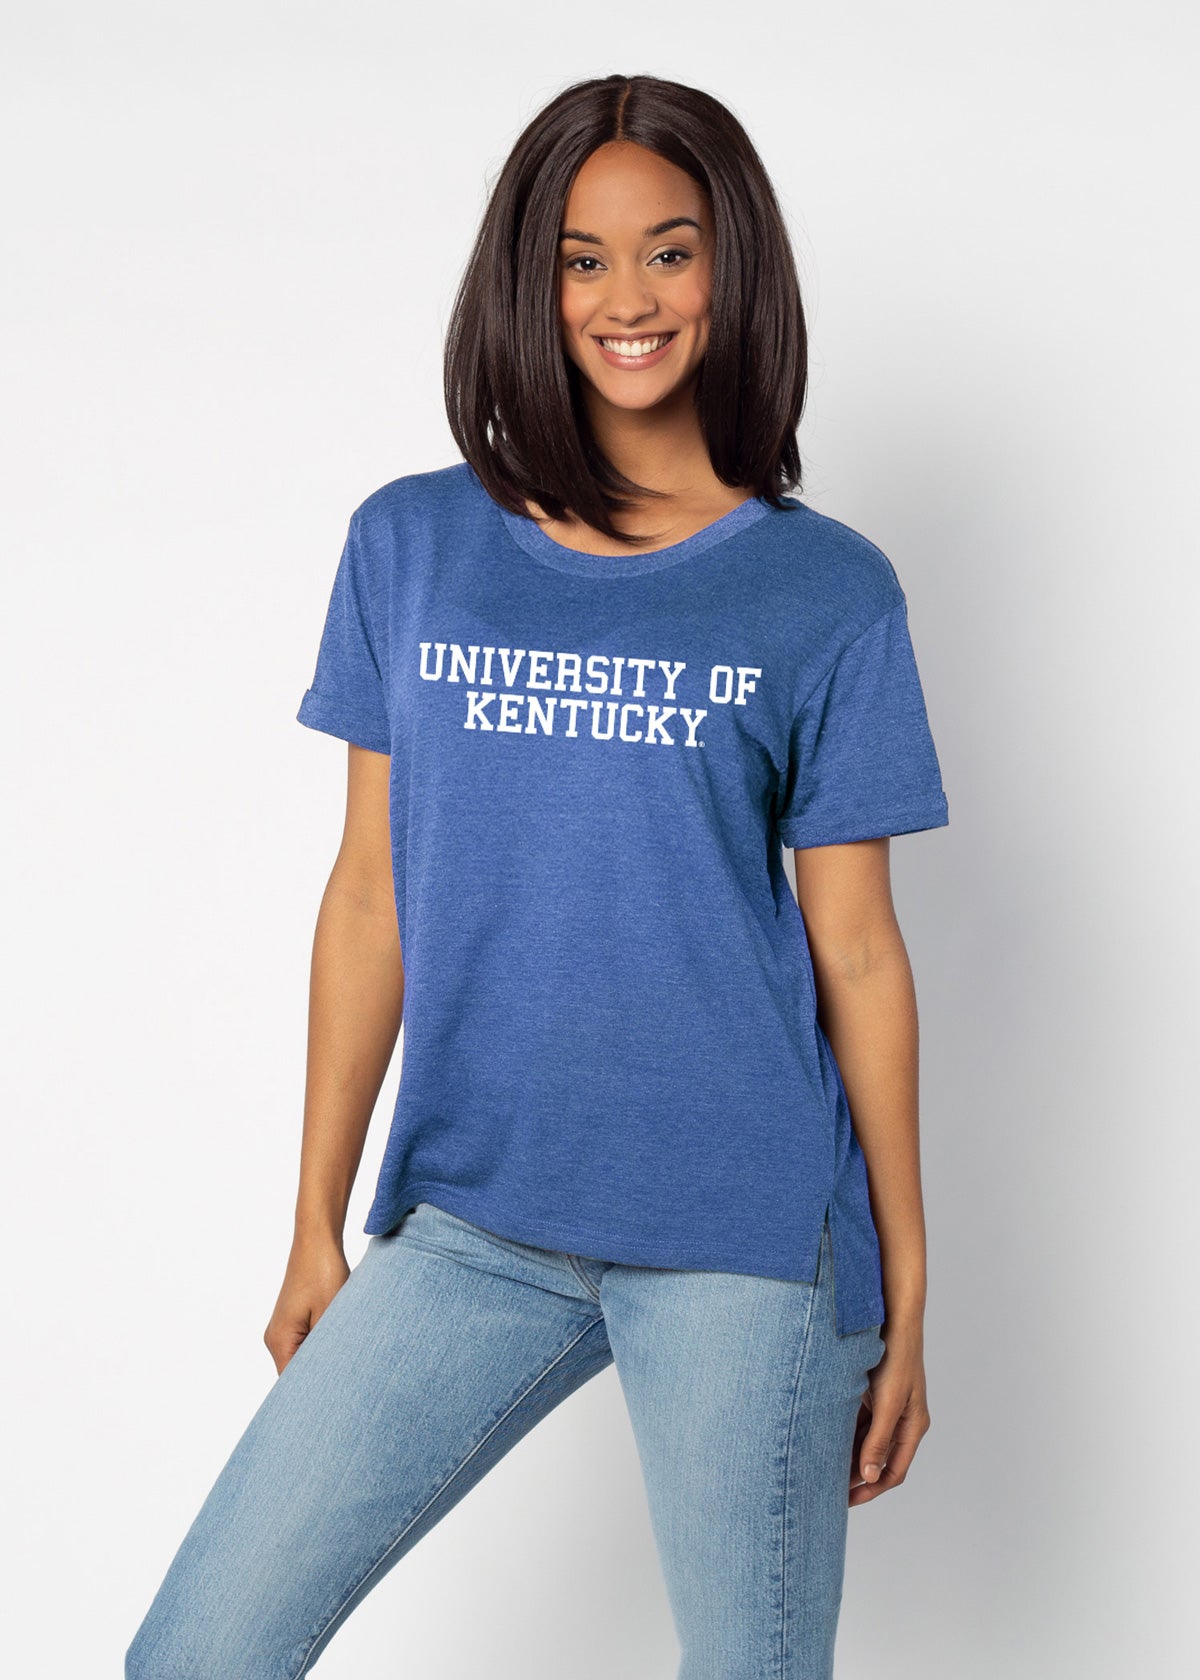 University of Kentucky women's T-shirt